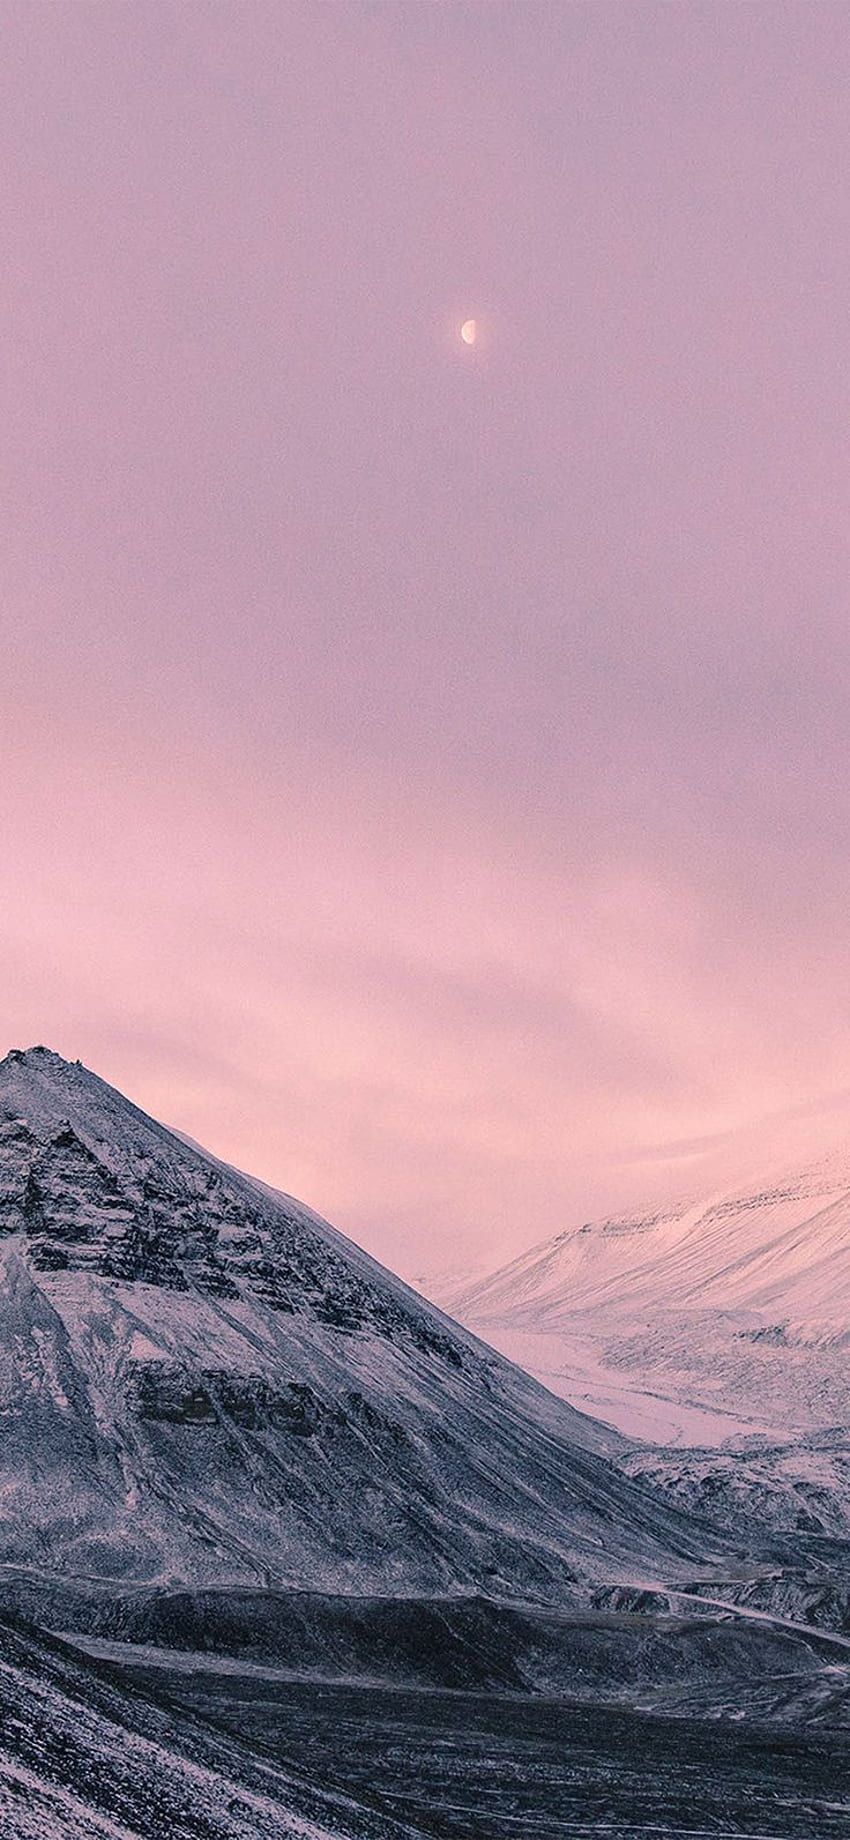 iPhone X : 雪 冬 月 山 自然 ピンク 経由 fo. マガジン 世界中の最高のあなたの毎日の情報源 HD電話の壁紙